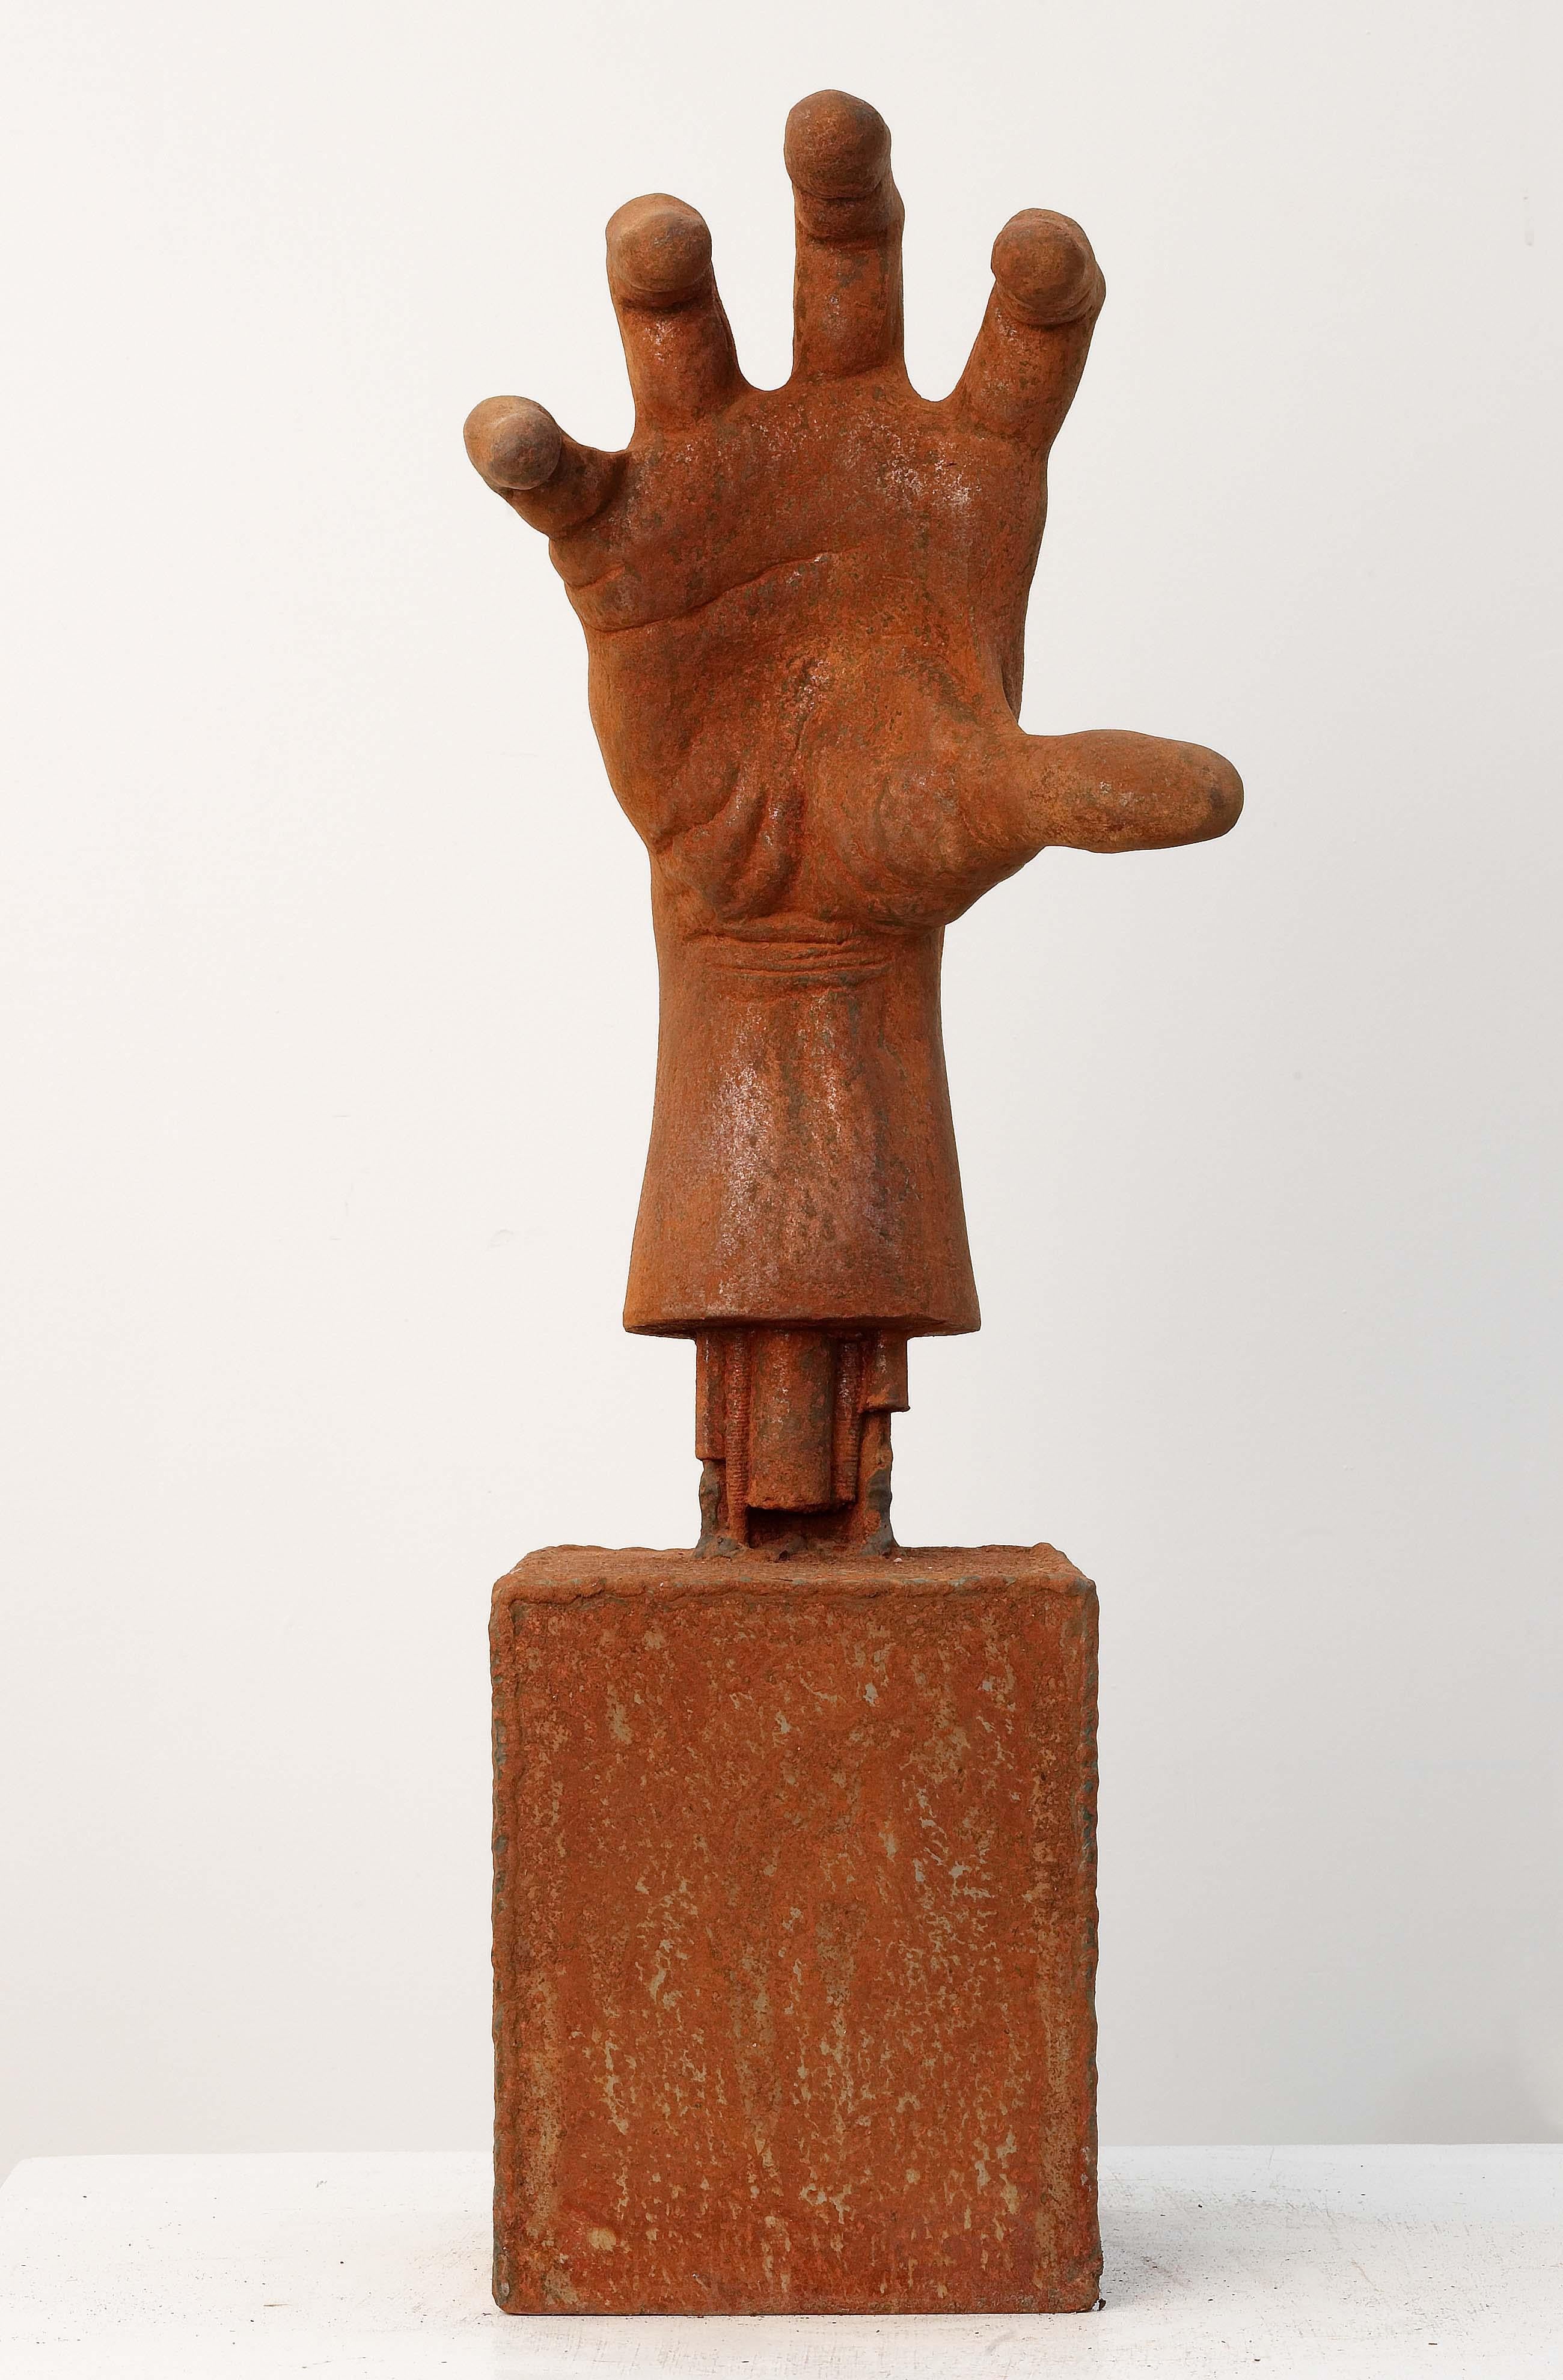 Mauro Corda Figurative Sculpture - Trois suricates roses